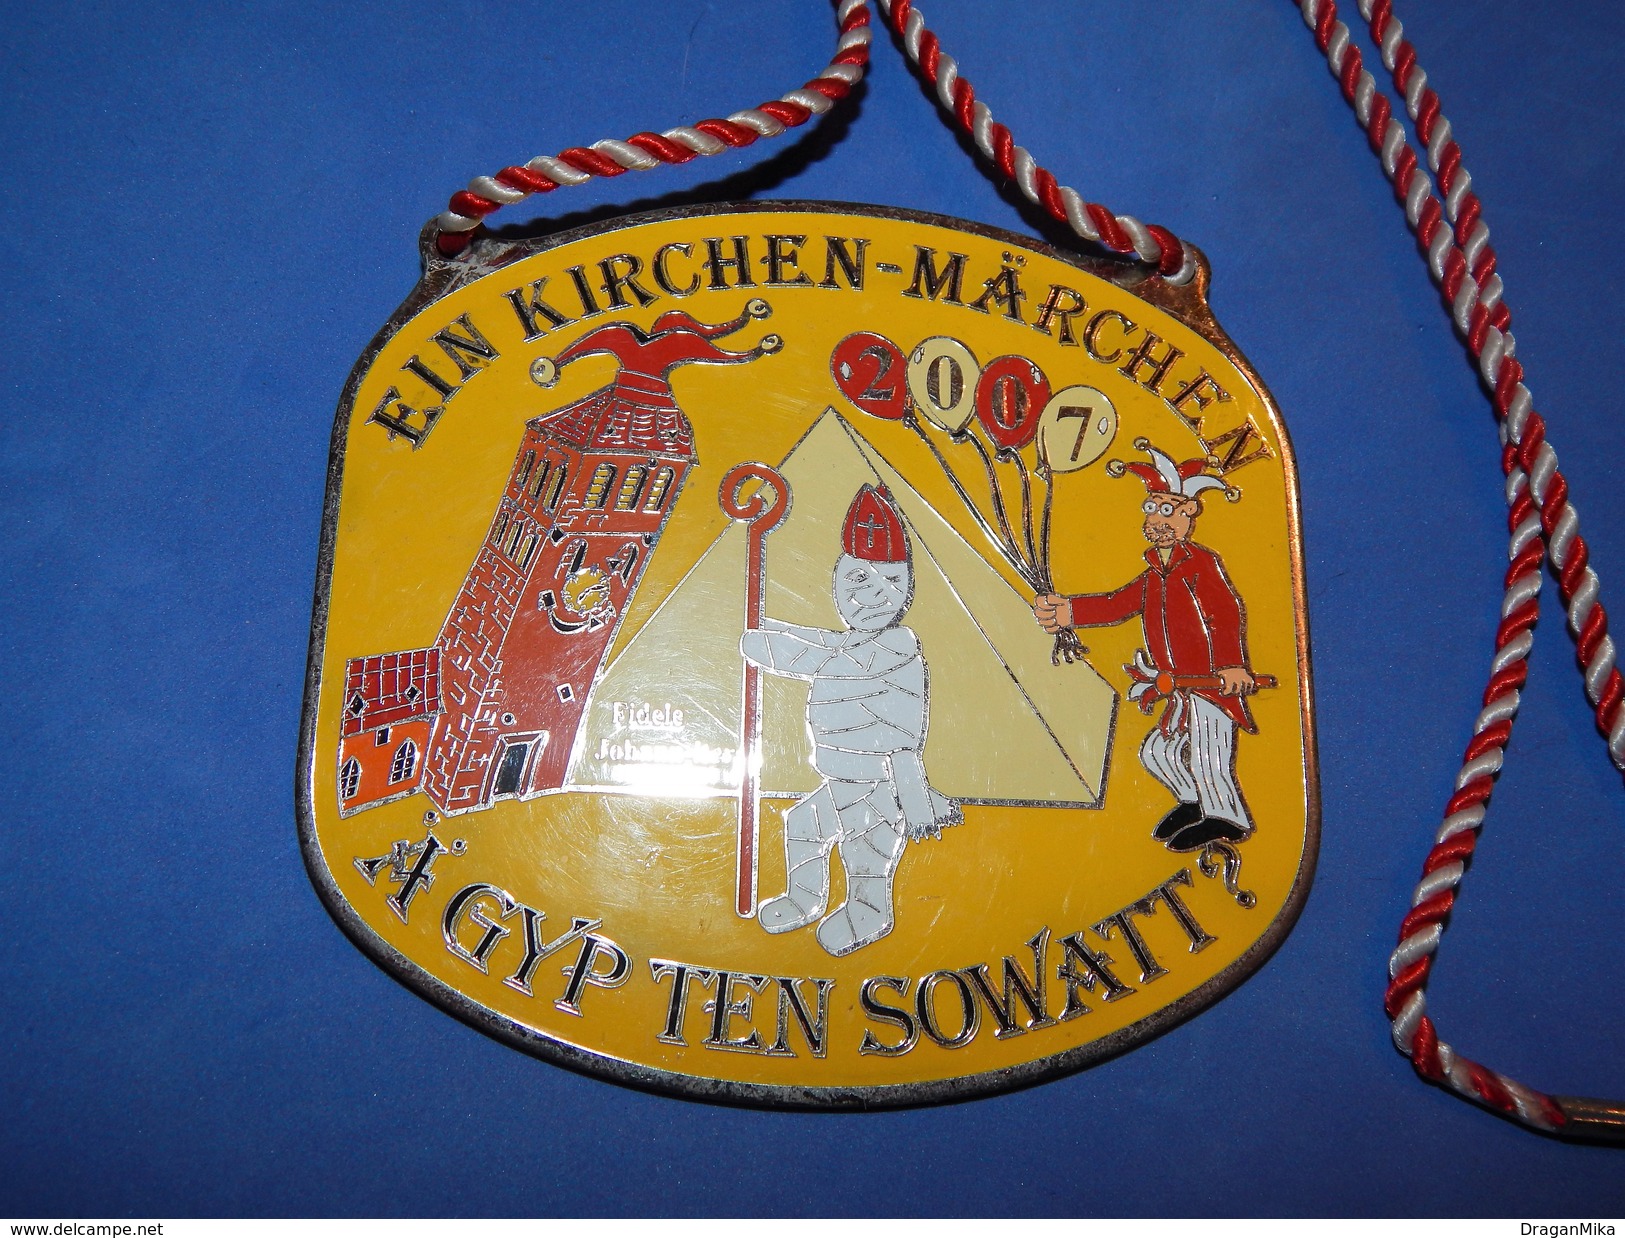 Huge ''Schutz'' Medal: EIN KIRCHEN - MARCHEN 2007 A GYP TEN SOWAT? - Carnaval